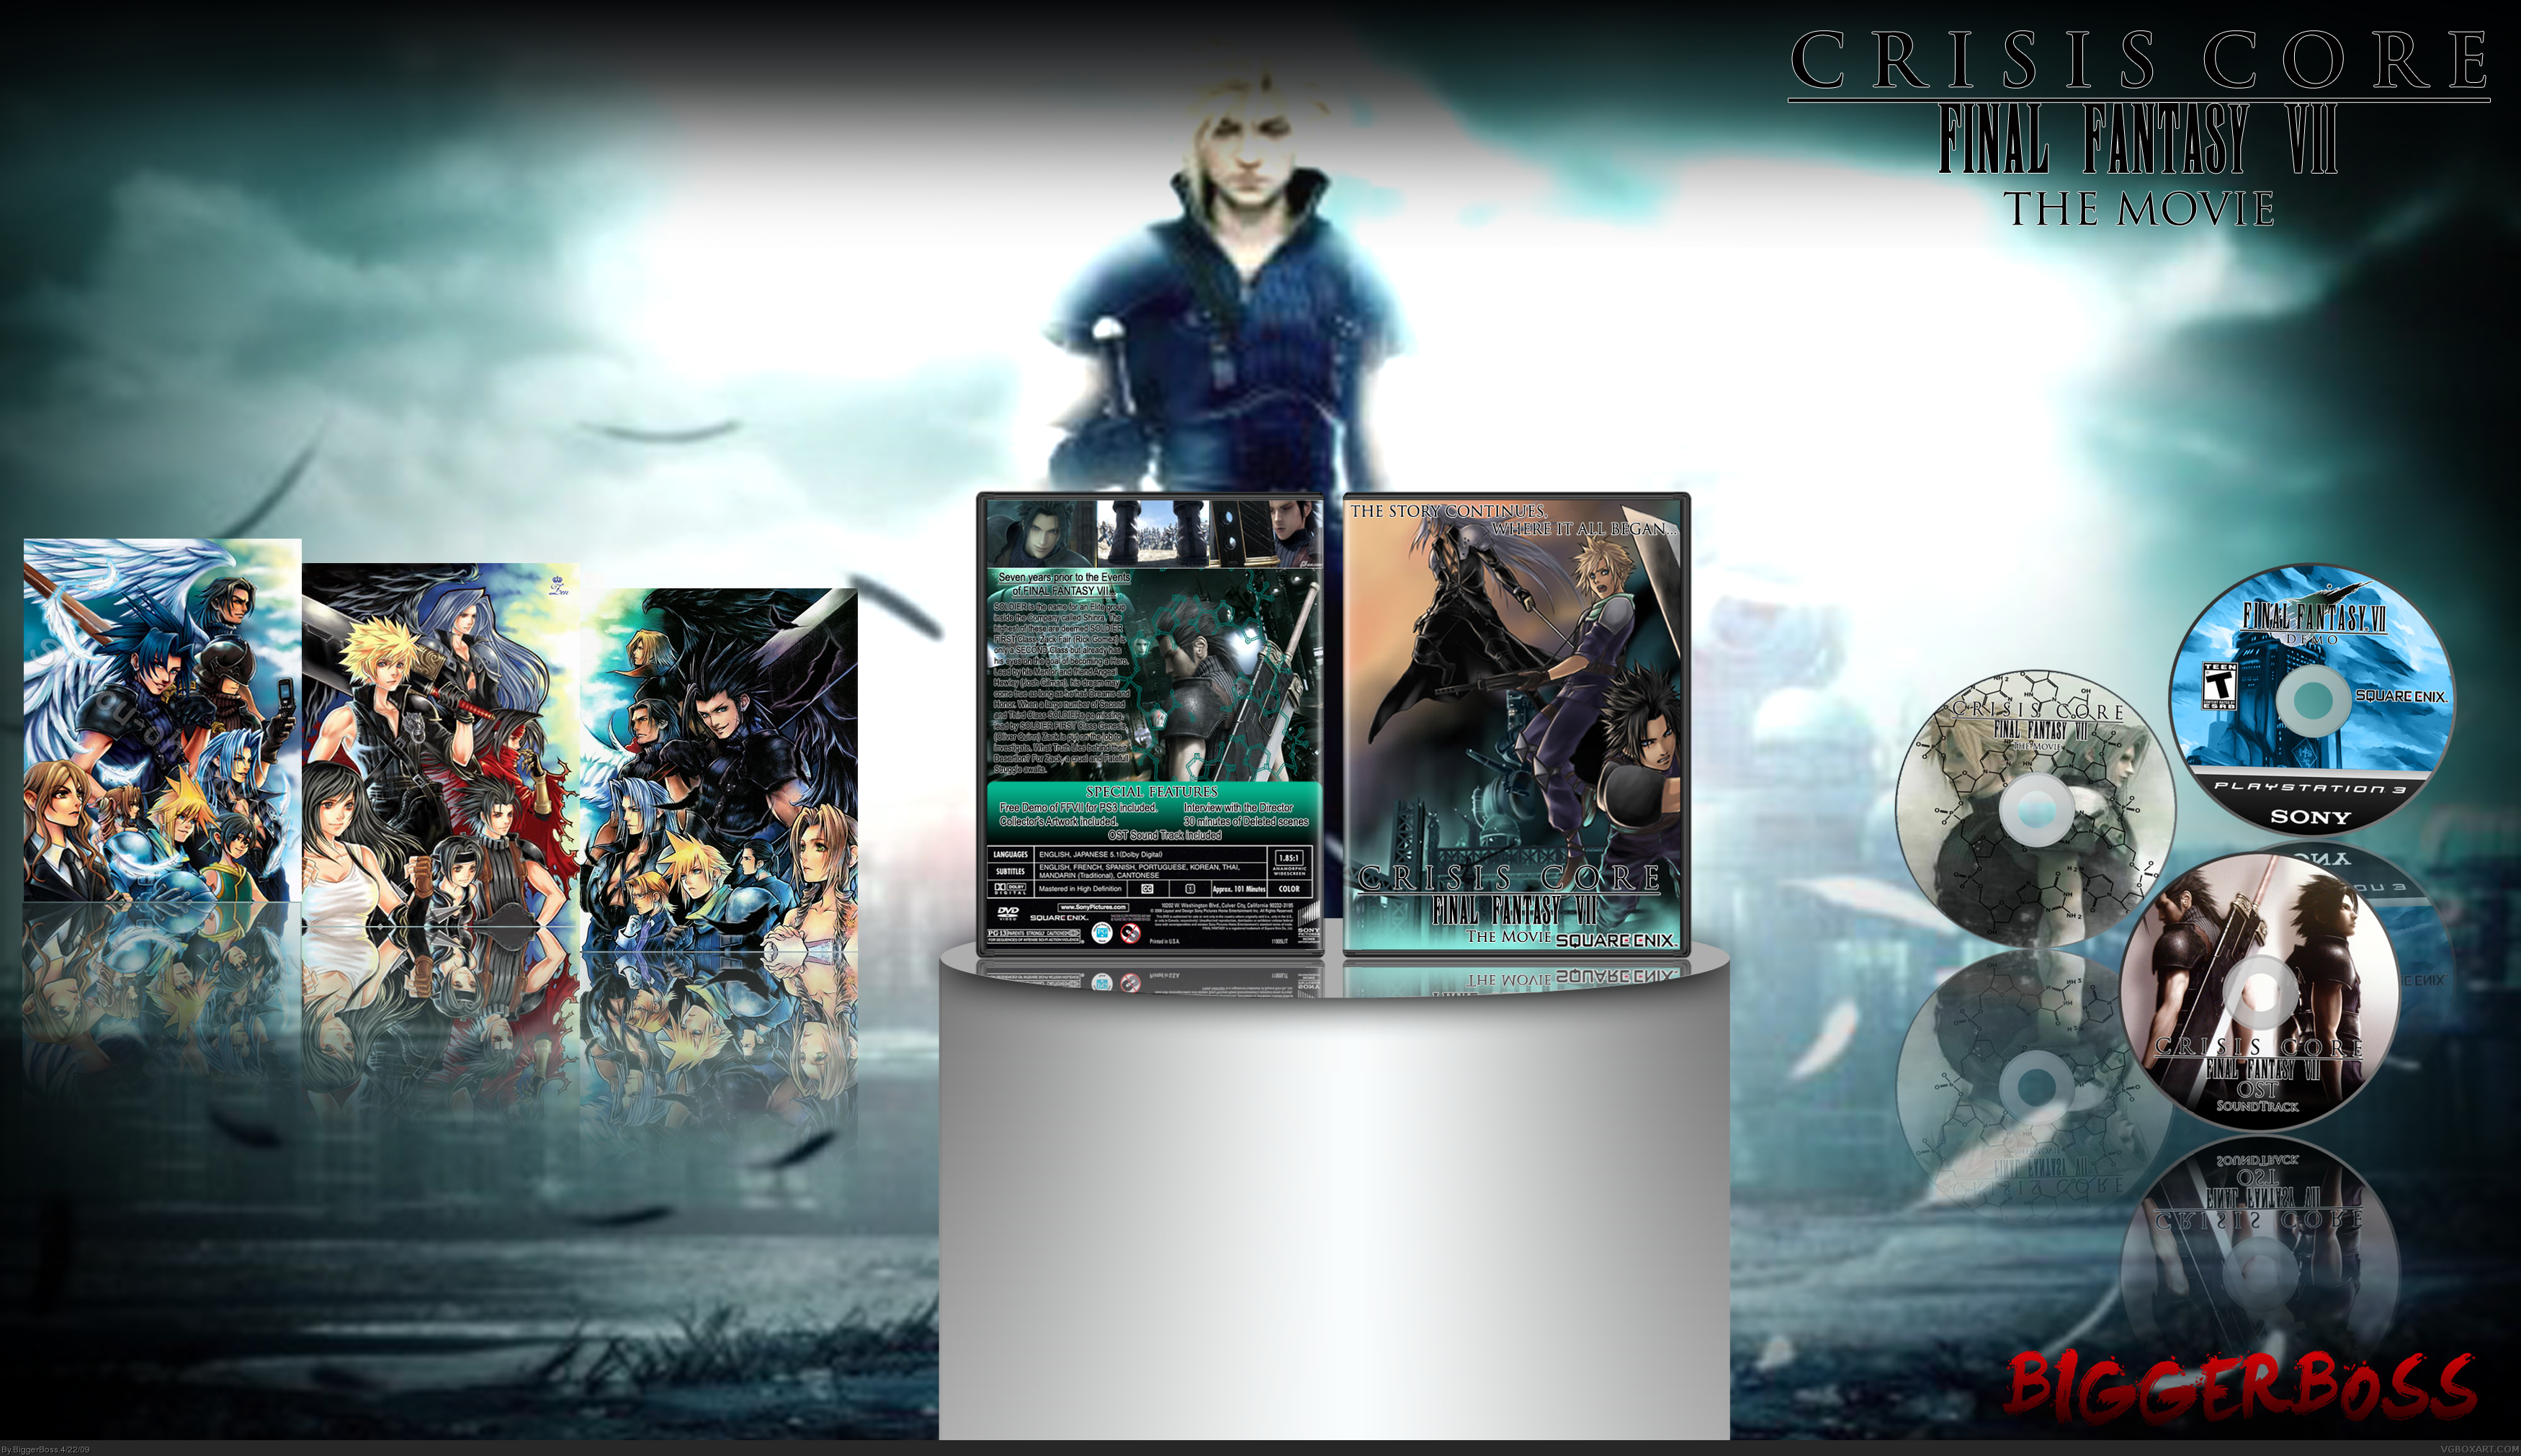 Final Fantasy VII: Crisis Core The Movie box cover